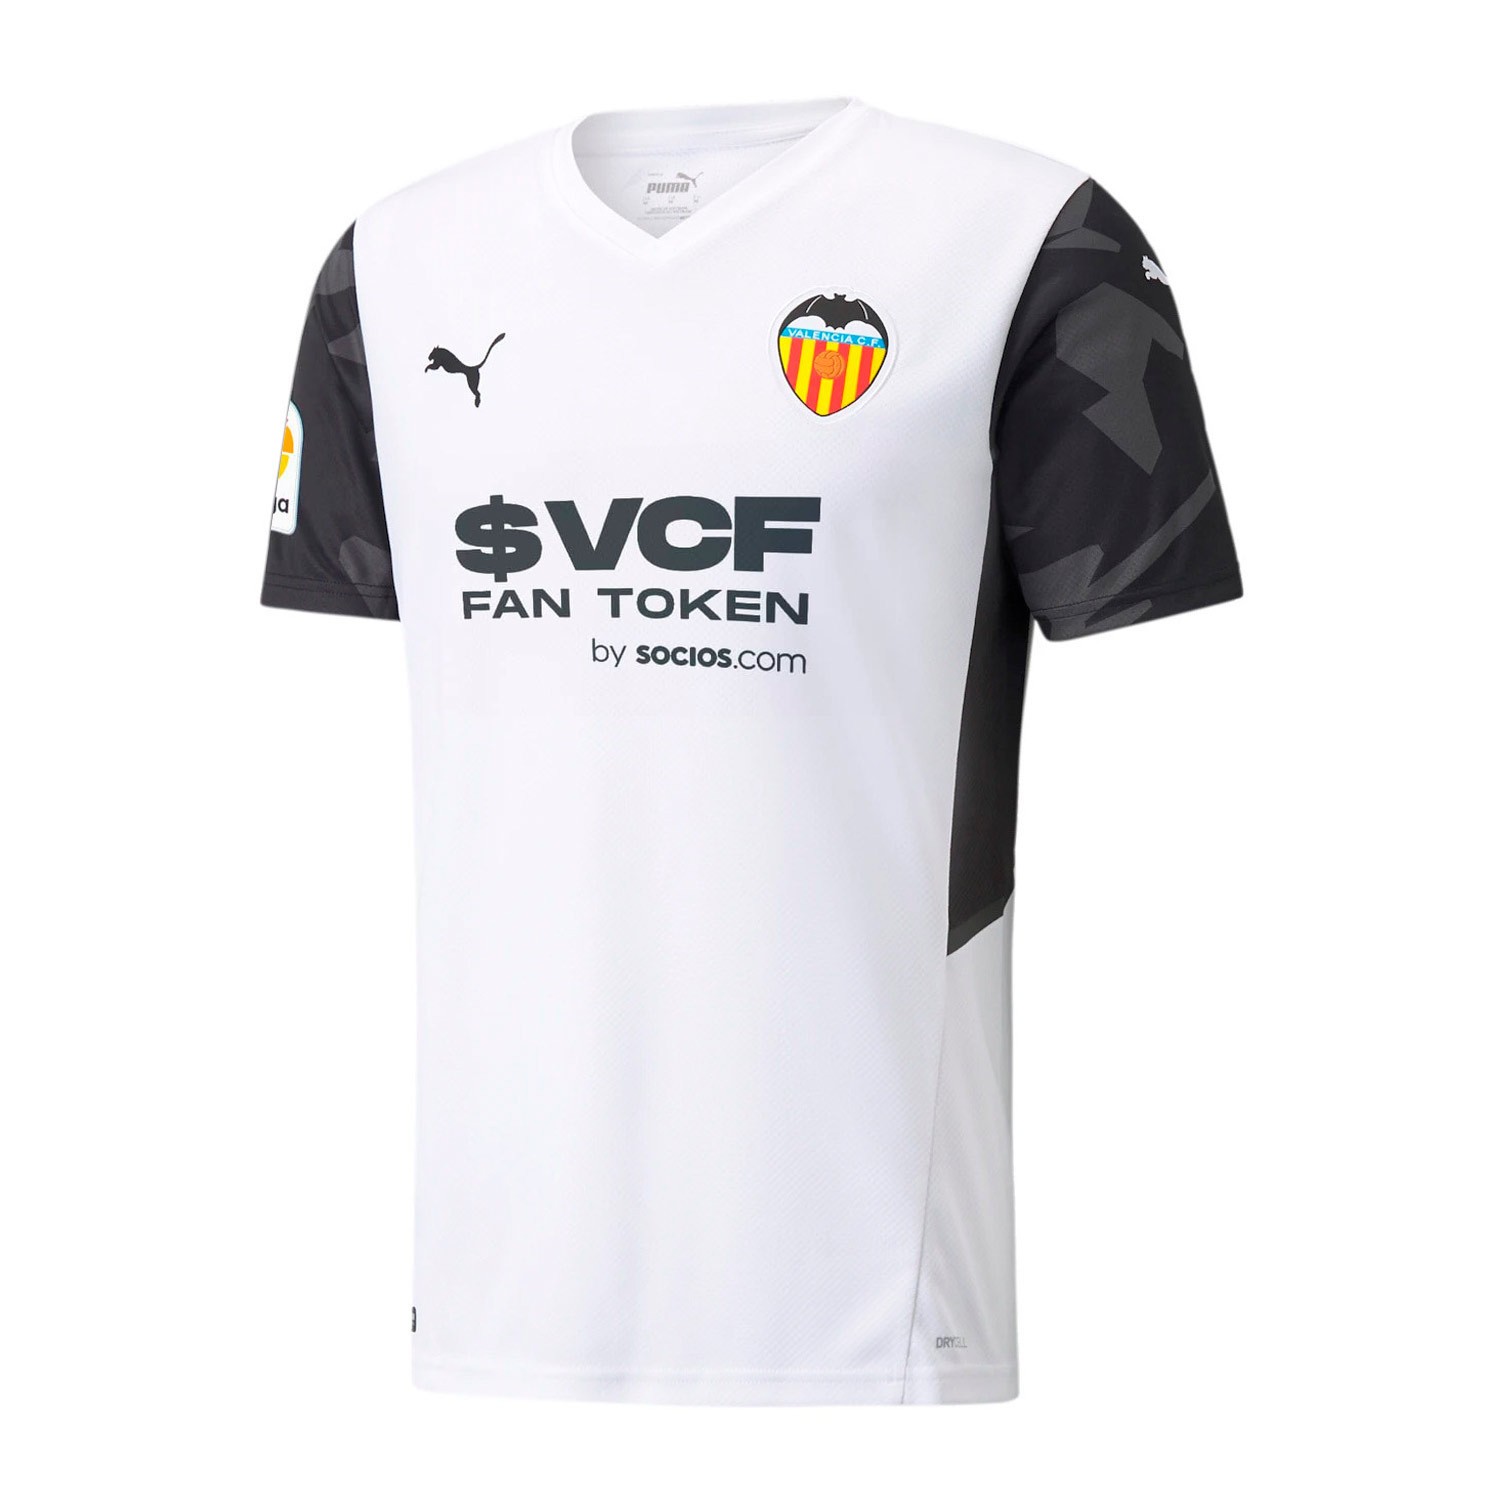 Clasificación perdonar Lógicamente Camiseta Hombre Puma Valencia C.F 2021/2022 Blanco 759336-01